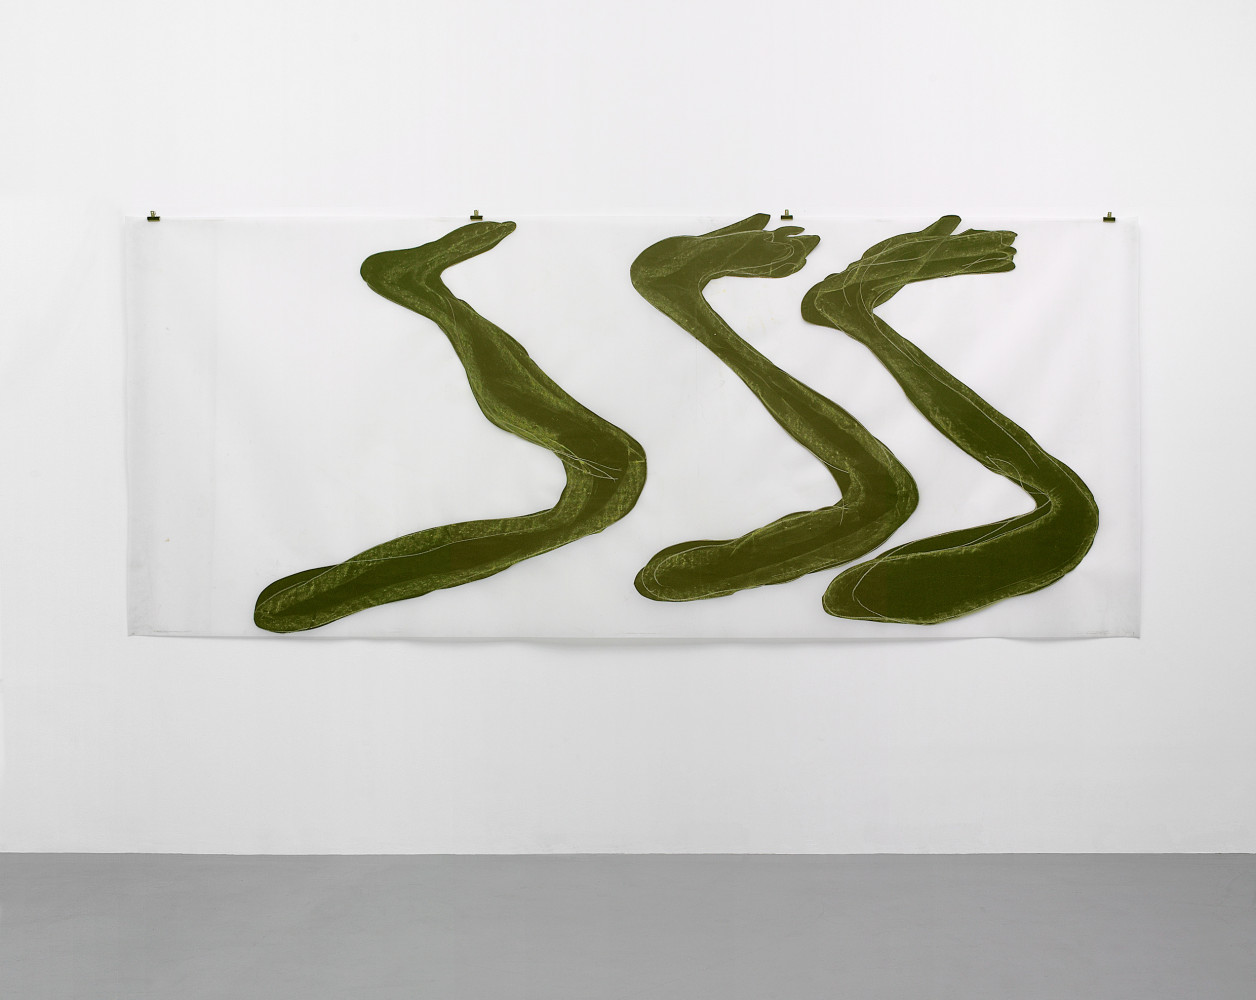 Mario Merz, Installation view, Buchmann Galerie, 2007